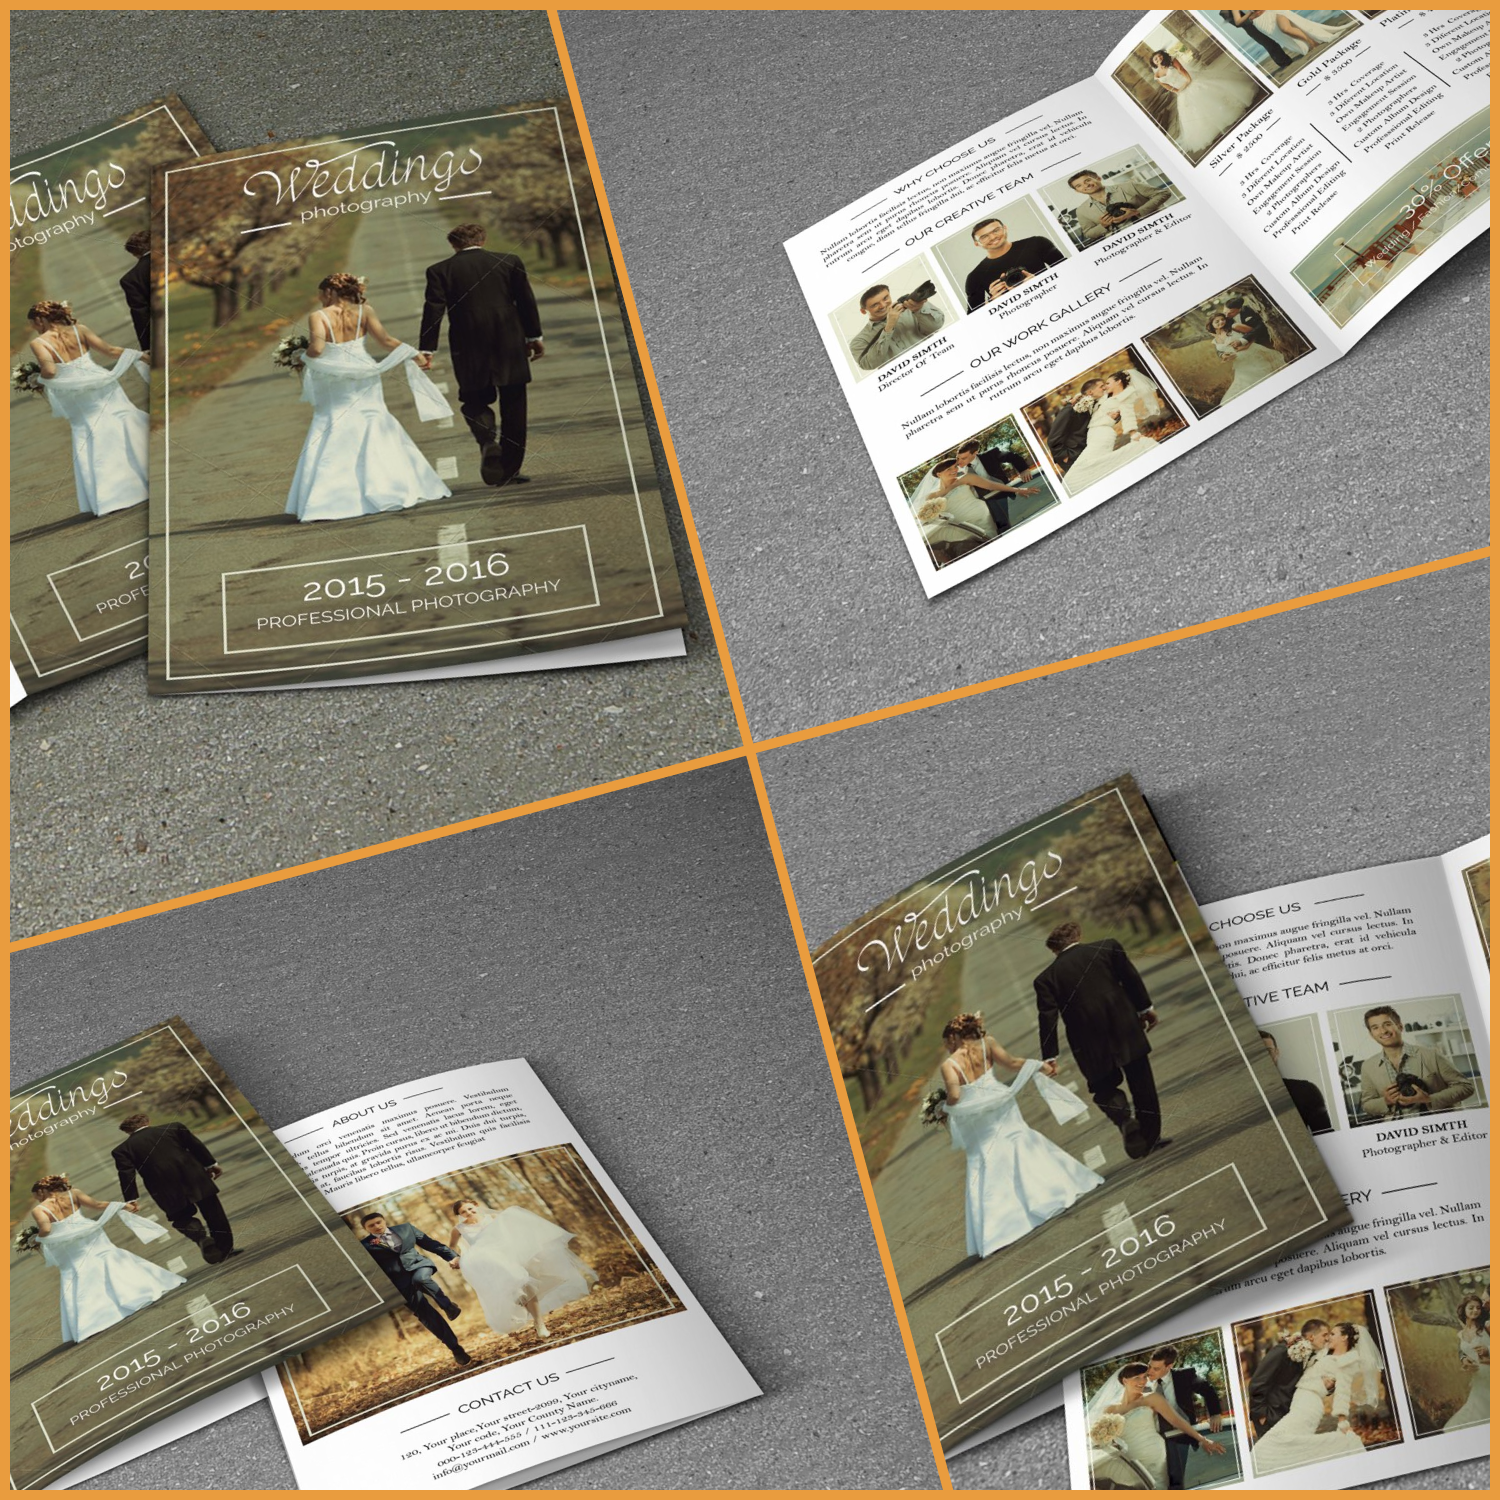 Prints of wedding photography brochure.